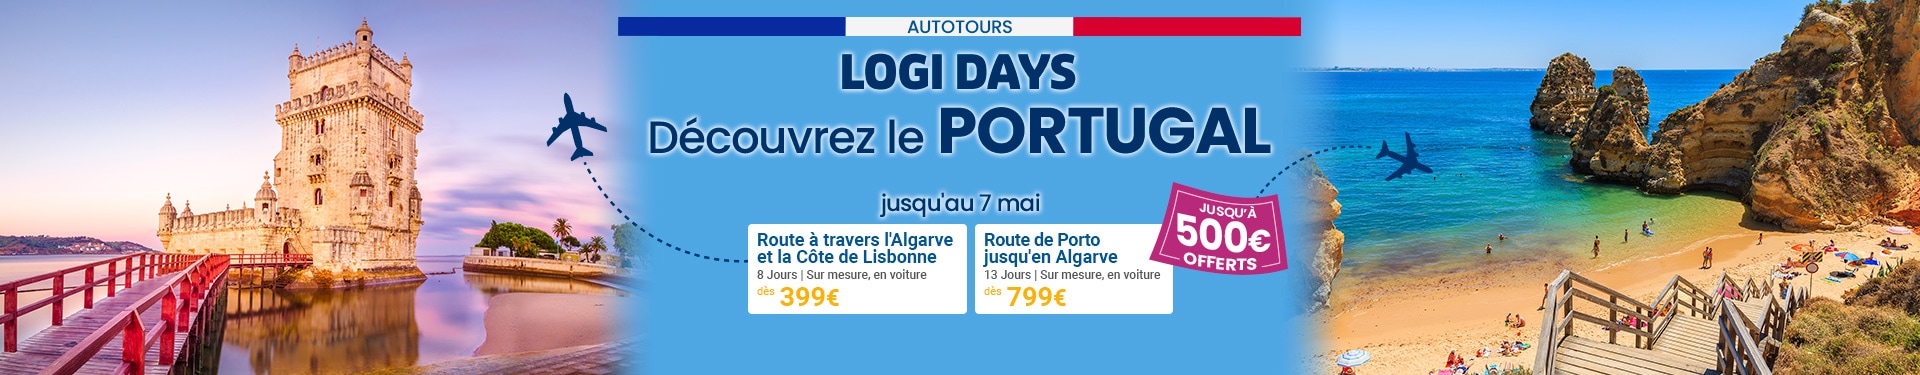 LOGIDAYS Autotours au Portugal